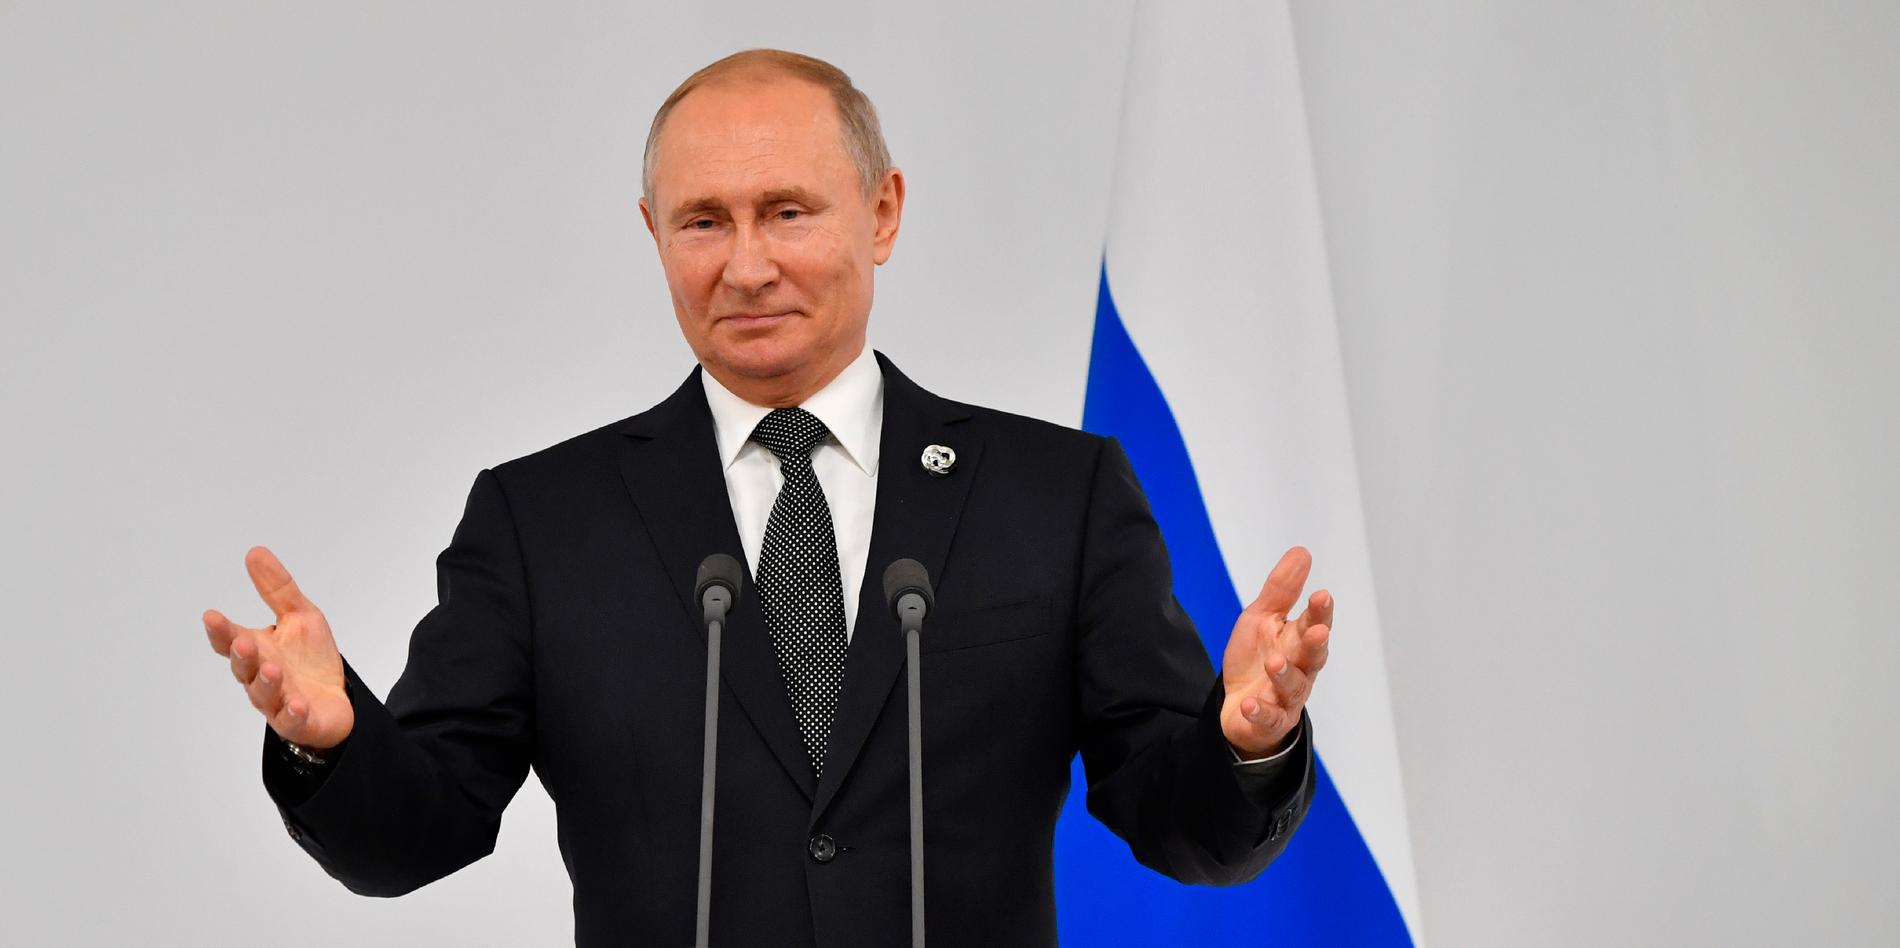 President Vladimir Putin måste avgå 2024, enligt reglerna i den ryska konstitutionen.